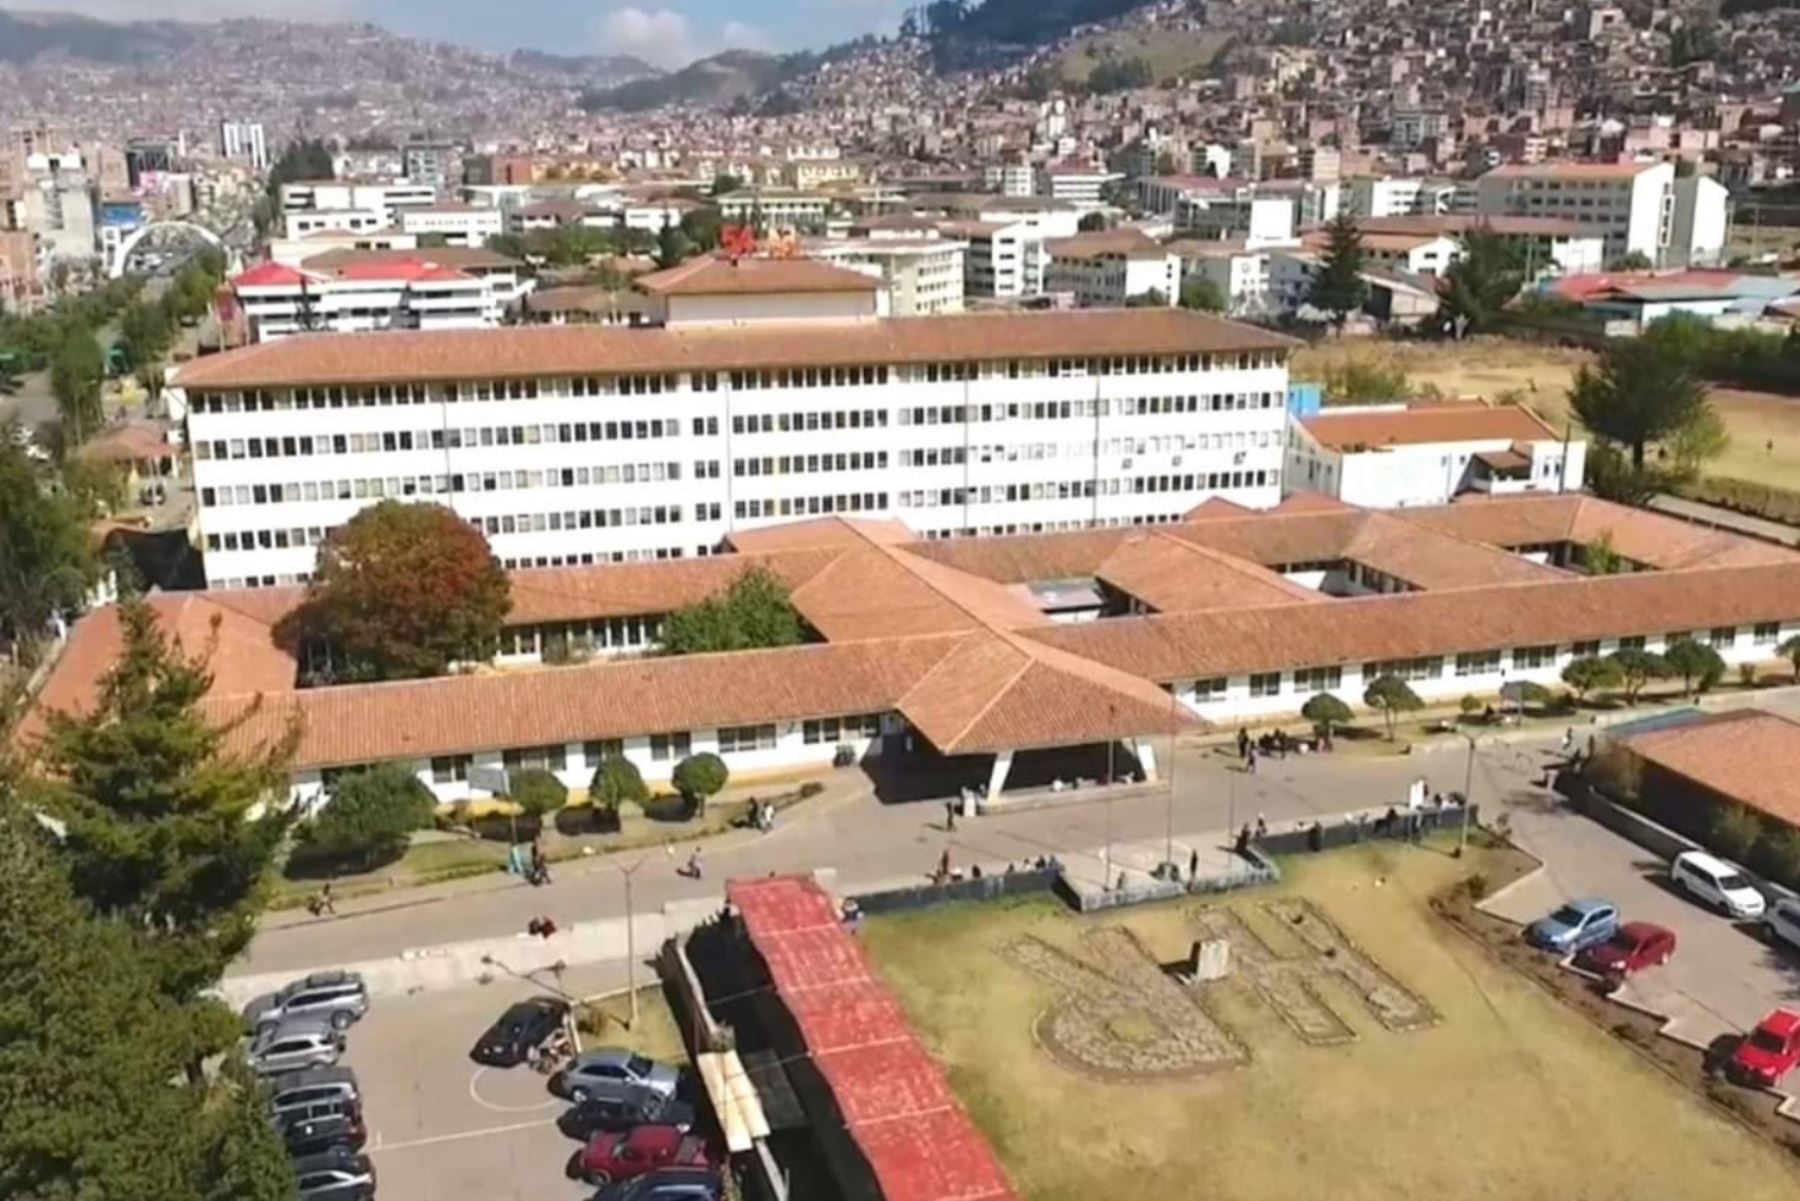 Las dos turistas de nacionalidad china se encuentran internadas en el Hospital Regional de Cusco para descartar posible caso de coronavirus. Foto: Percy Hurtado